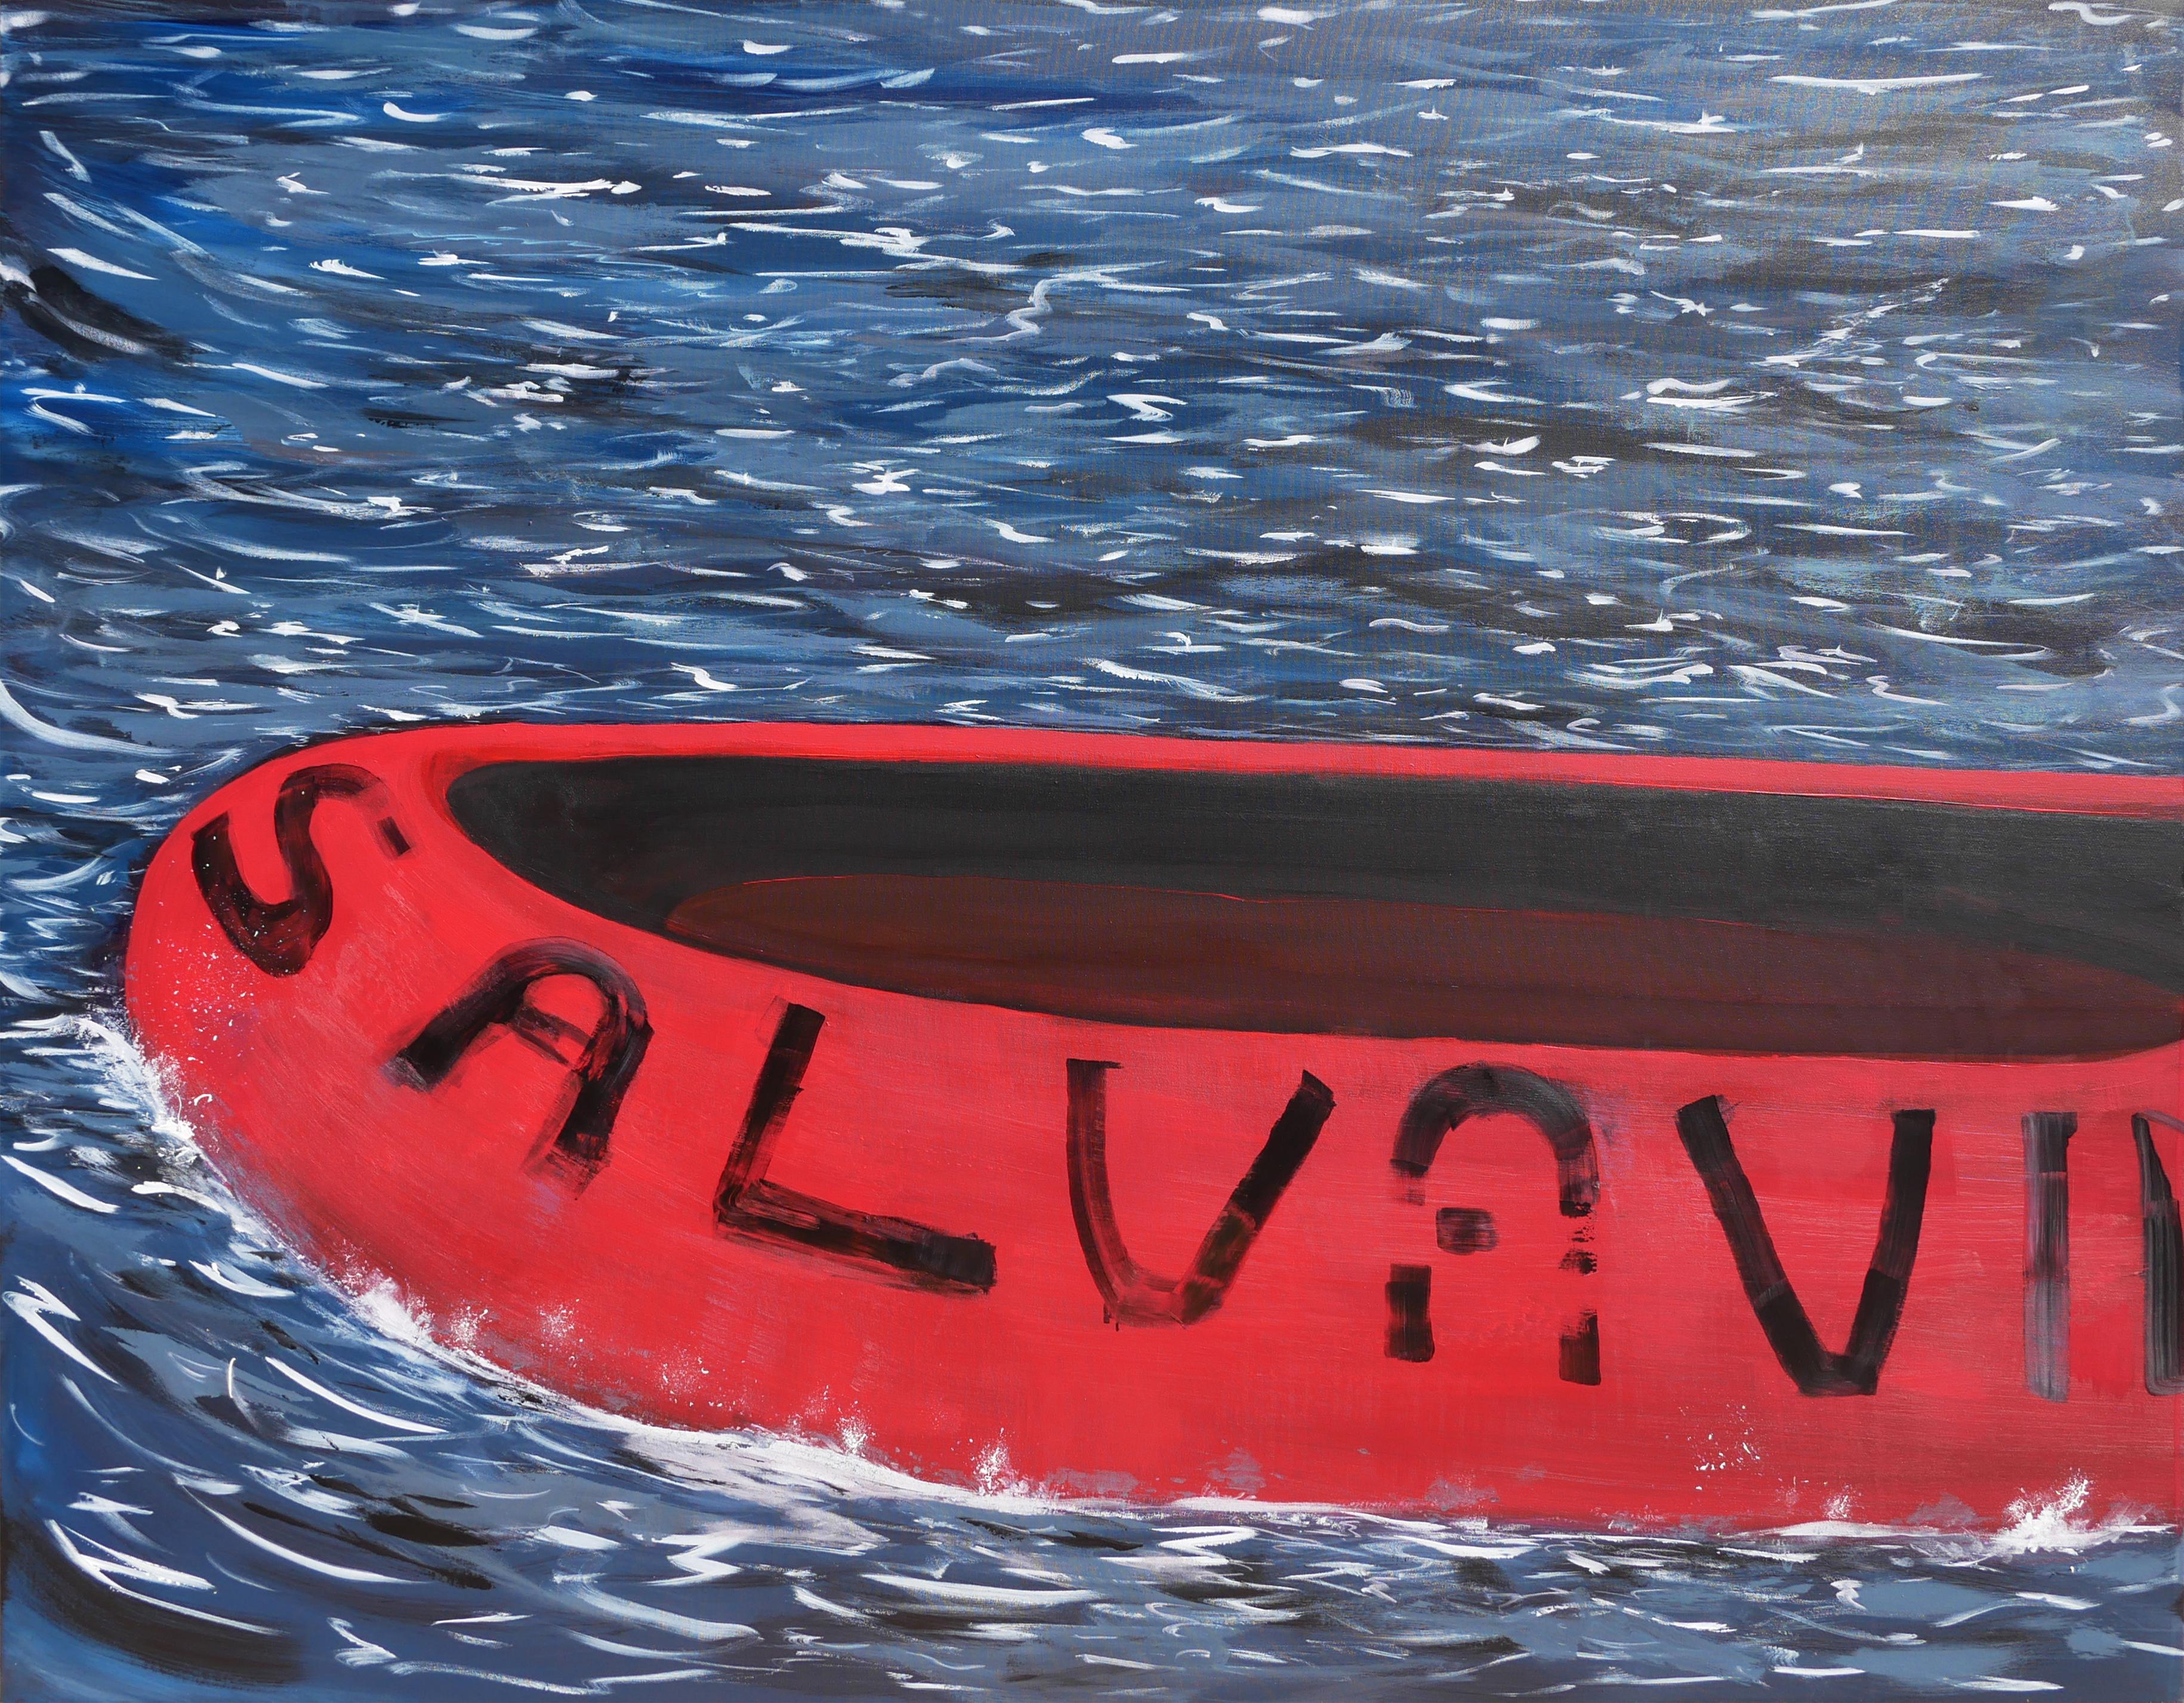 Abstract Painting Moisés Villafuerte - Salvavida - Peinture de paysage marin contemporain bleu, rouge et blanc avec textes